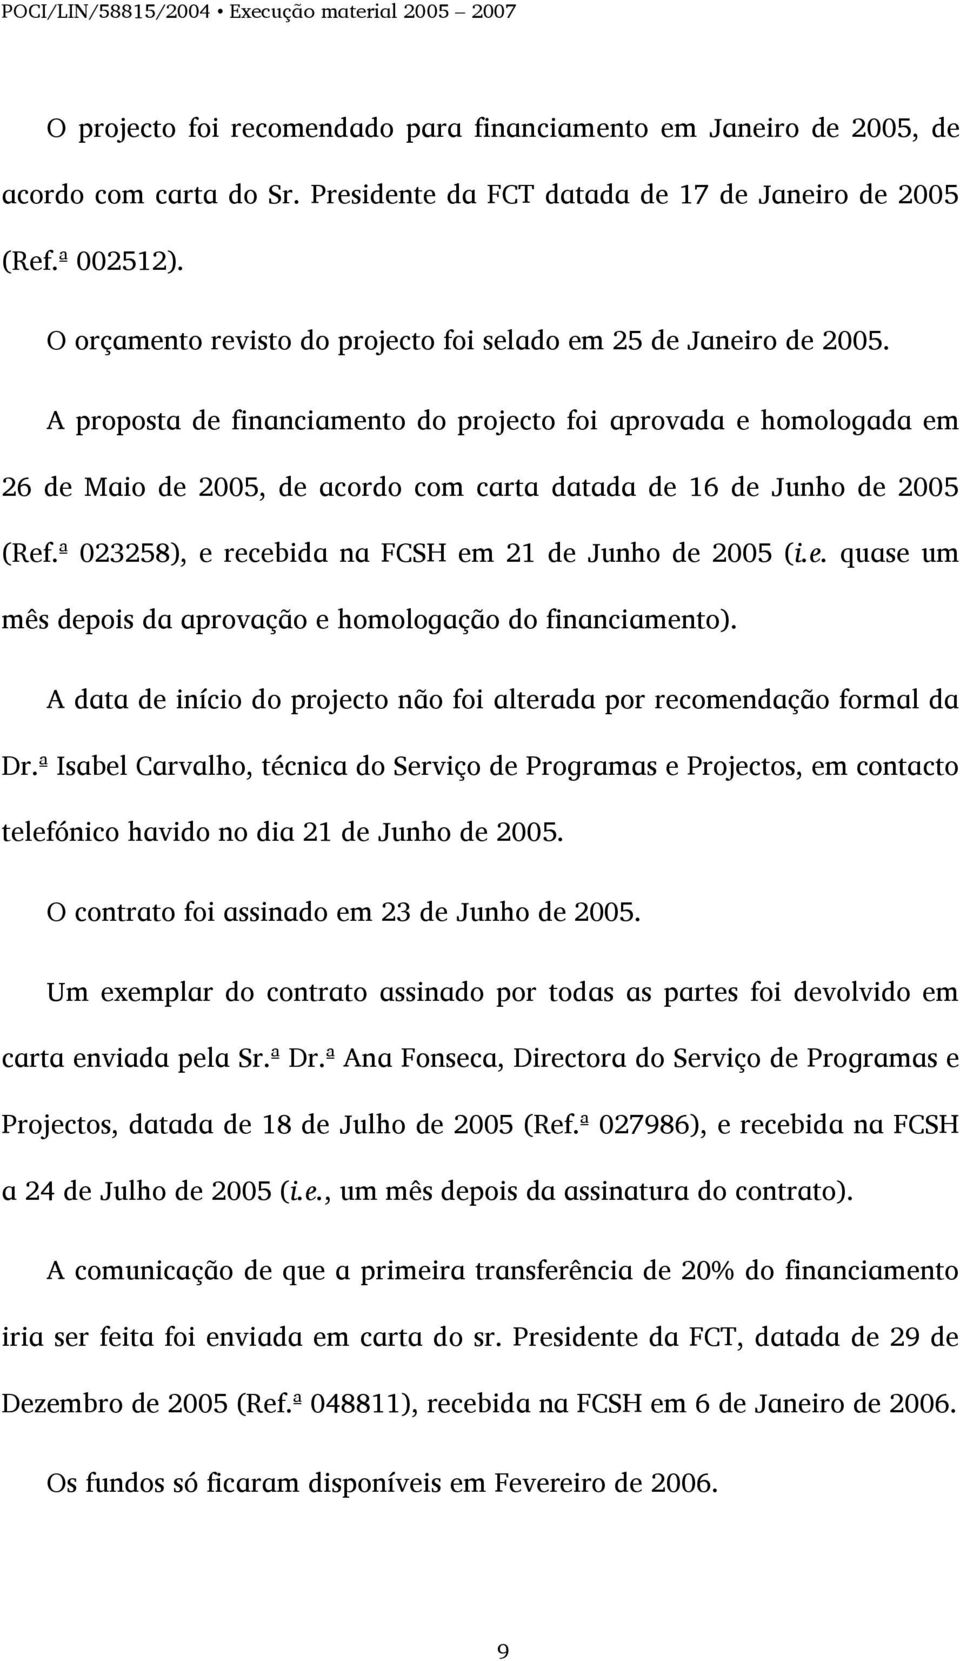 A proposta de financiamento do projecto foi aprovada e homologada em 26 de Maio de 2005, de acordo com carta datada de 16 de Junho de 2005 (Ref.ª 023258), e recebida na FCSH em 21 de Junho de 2005 (i.